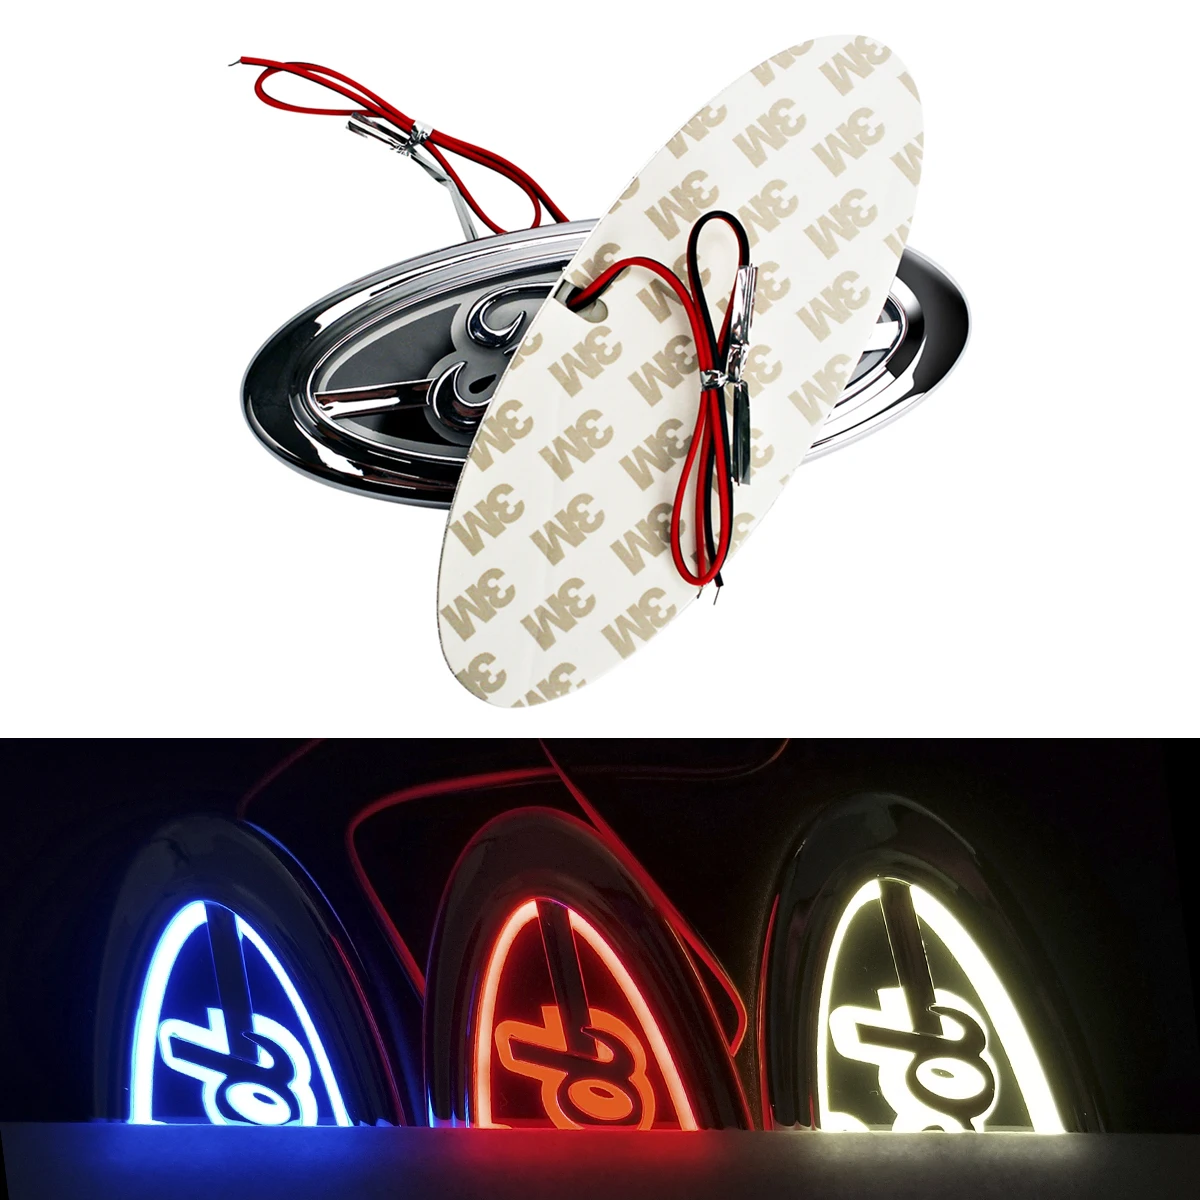 Tanio LED godło światła 14.5*5.6 5D świetlne Logo dla Ford